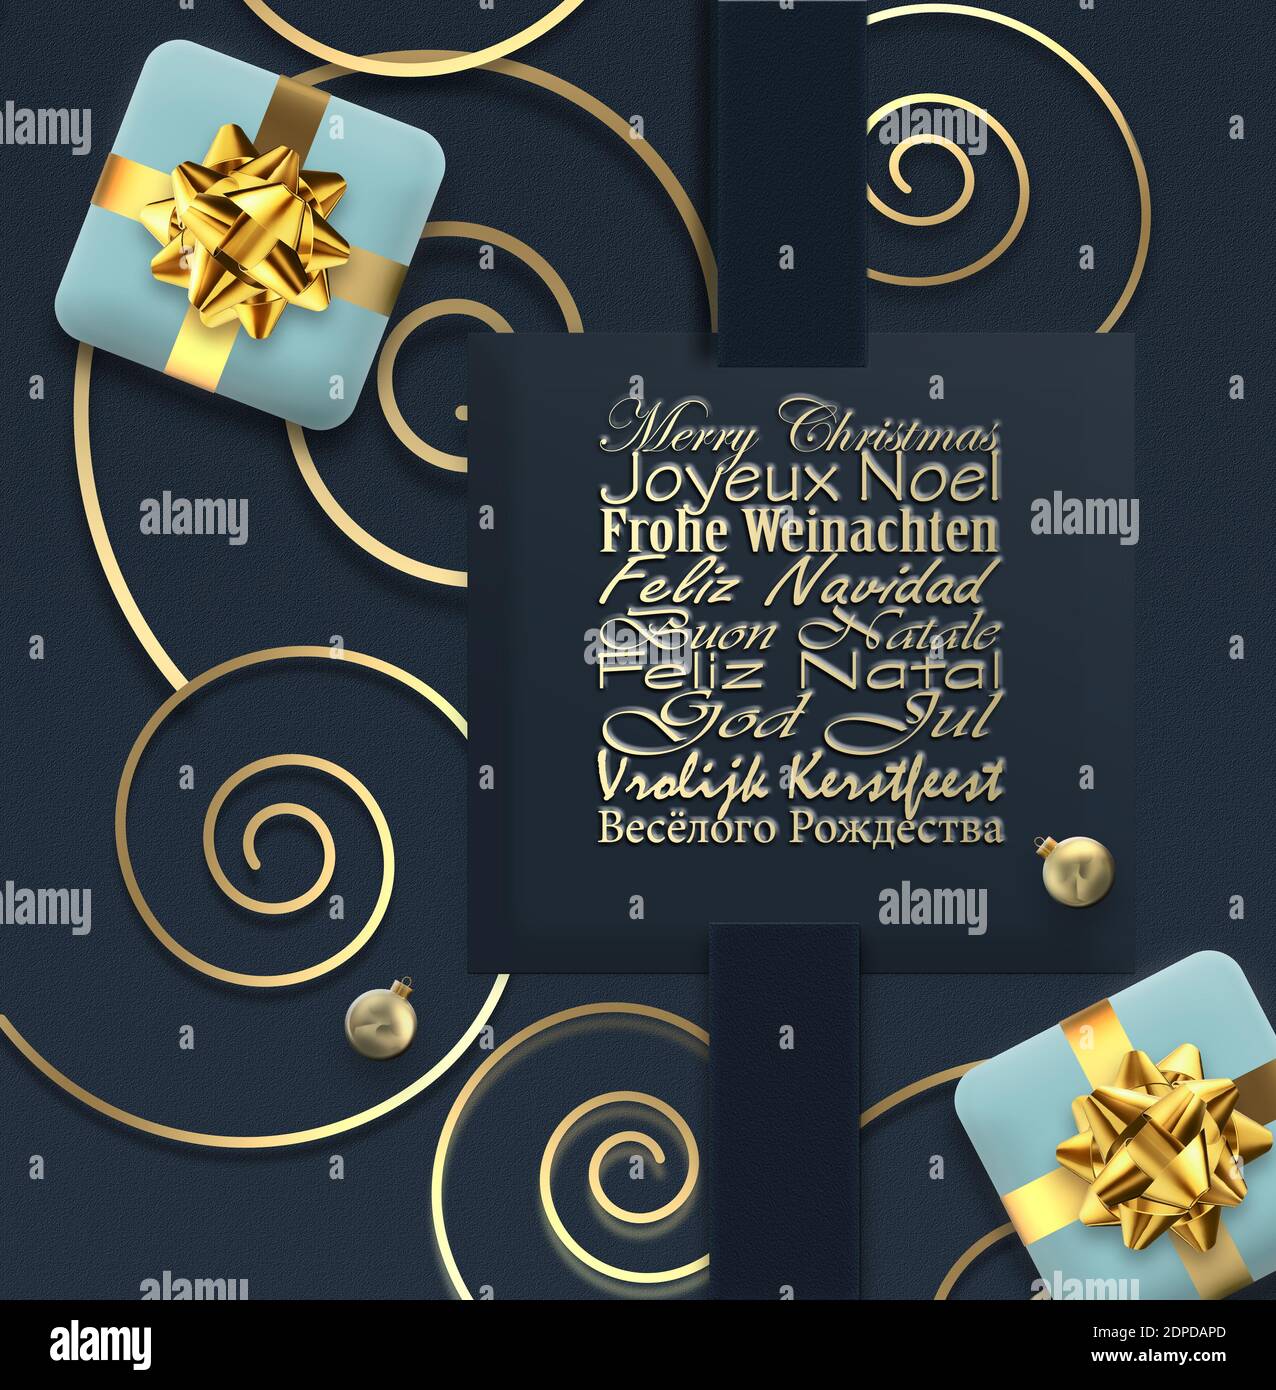 Weihnachtskarte in europäischen Sprachen Französisch, Deutsch, Portugiesisch, Italienisch, Spanisch, Schwedisch, Niederländisch, Englisch auf blauem Schwarz. Goldene Weihnachten Ornament Stockfoto